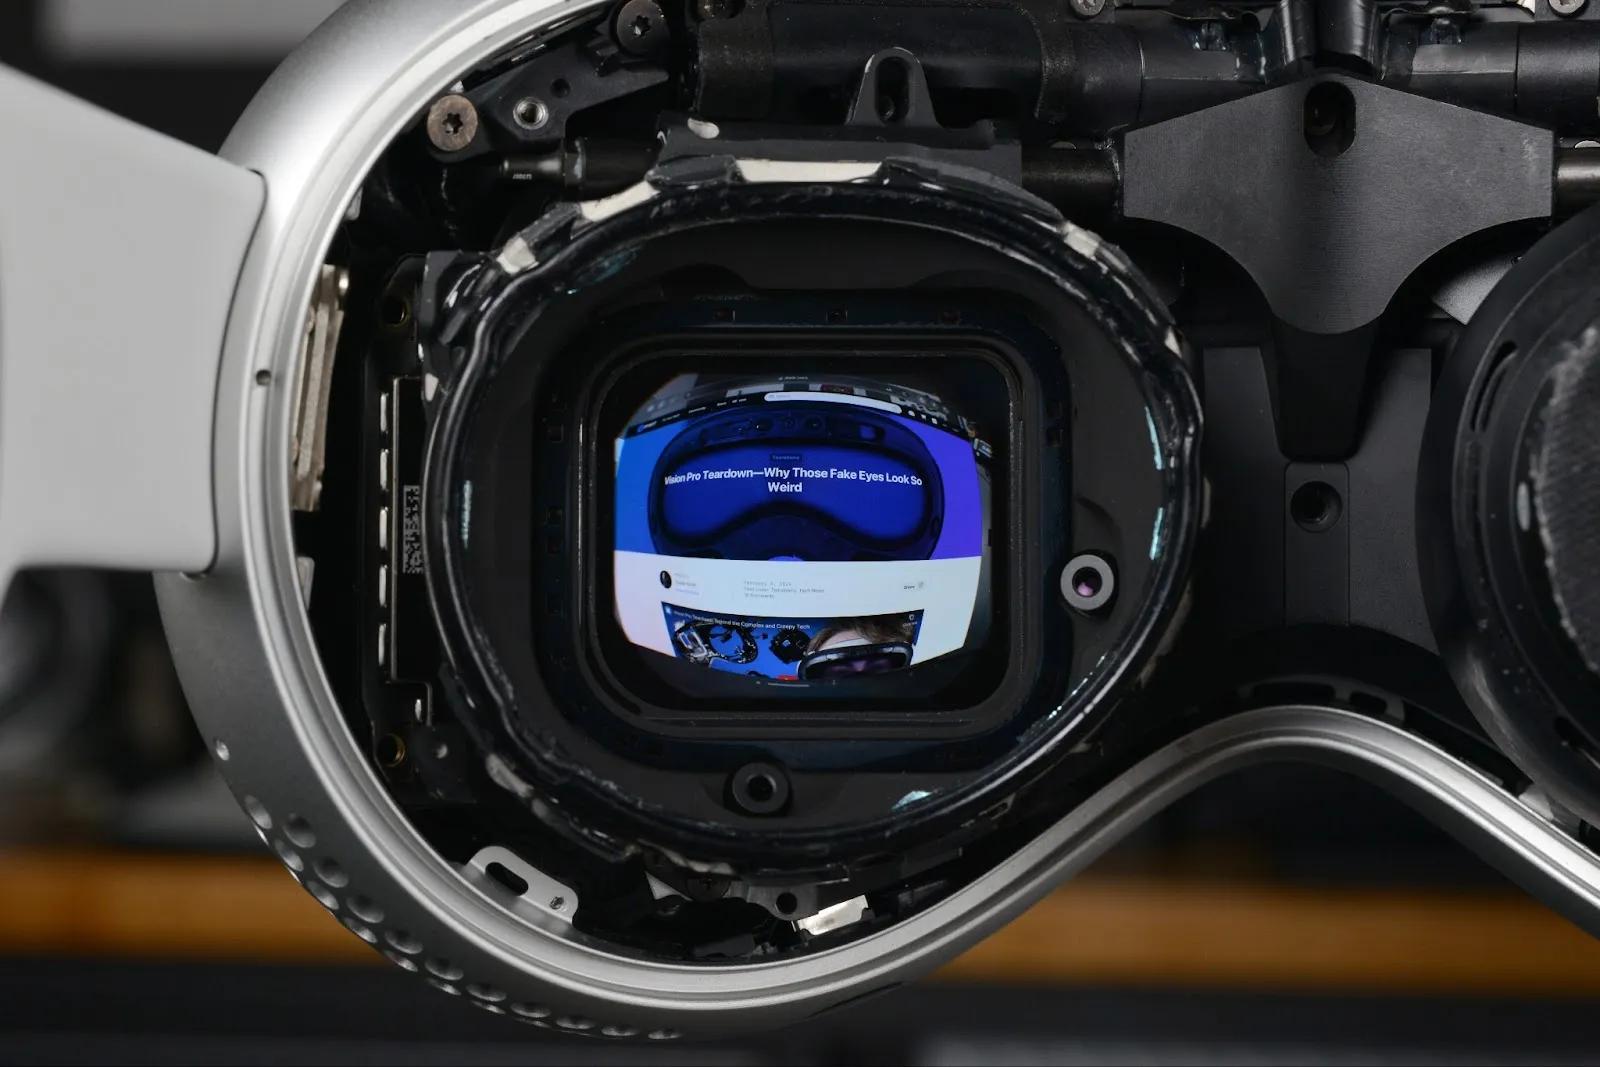 iFixit 用显微镜观察 Vision Pro 的 MicroOLED 显示真正的分辨率